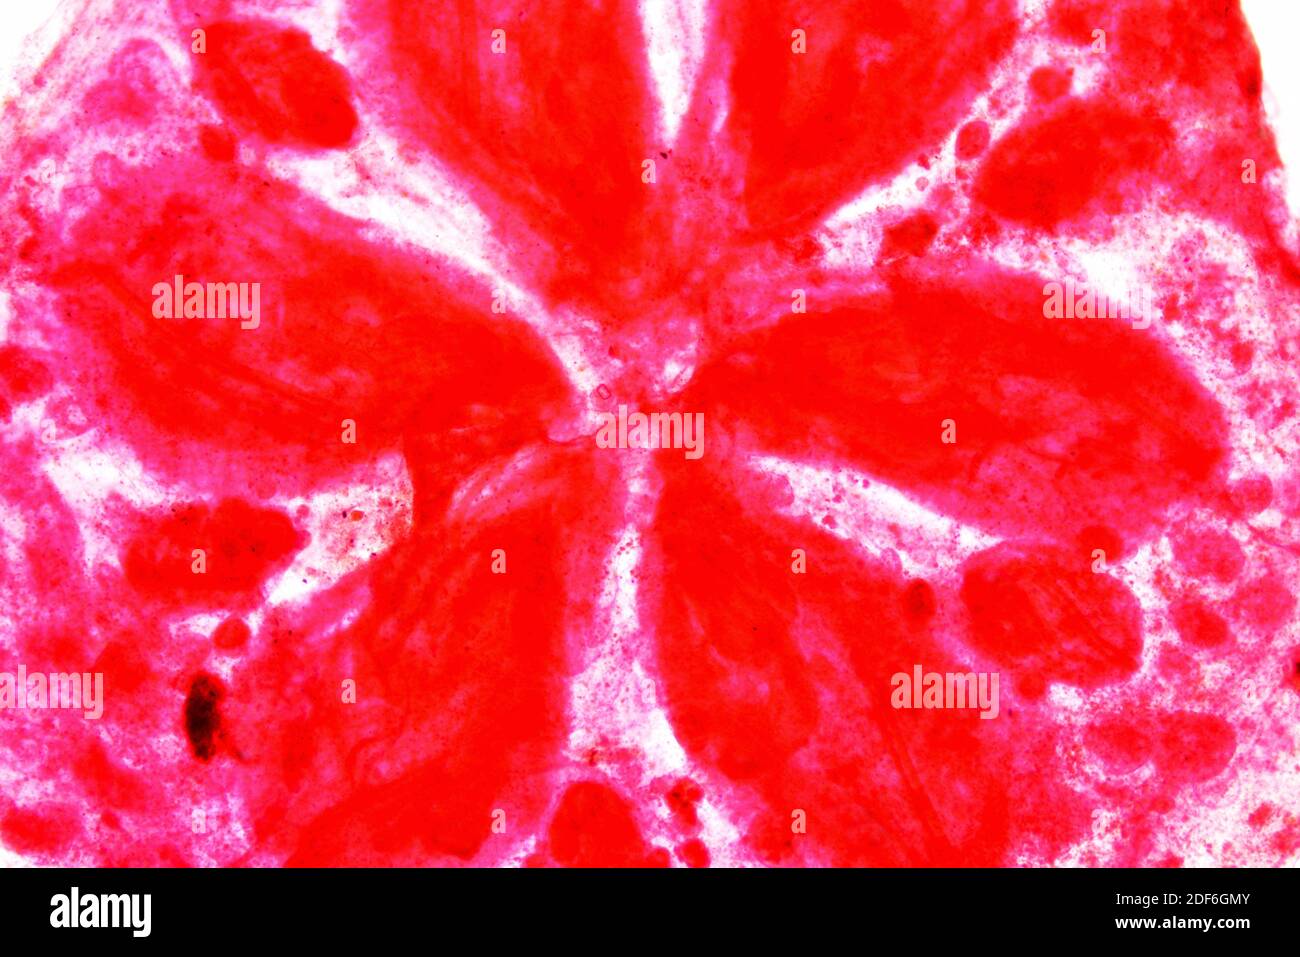 Acidiana o tunicato stellare (Botryllus schlosseri), sezione trasversale. Microscopio ottico X40. Foto Stock